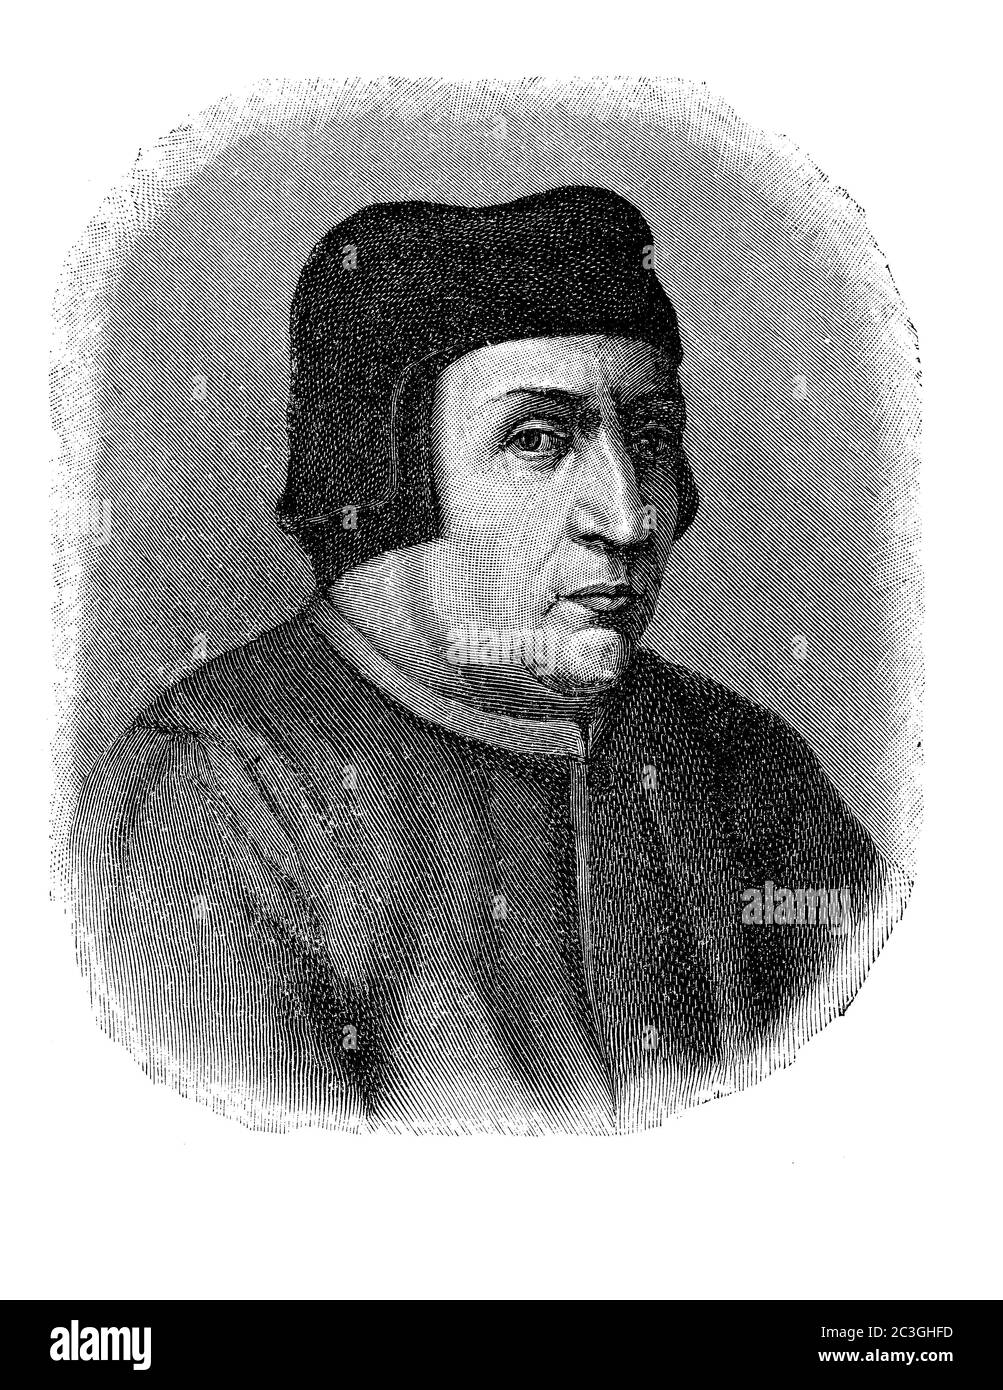 Ritratto di Francesco Guicciardini (1483 - 1540) il maggiore scrittore politico del Rinascimento italiano, storico e statista amico di Niccolo Machiavelli Foto Stock